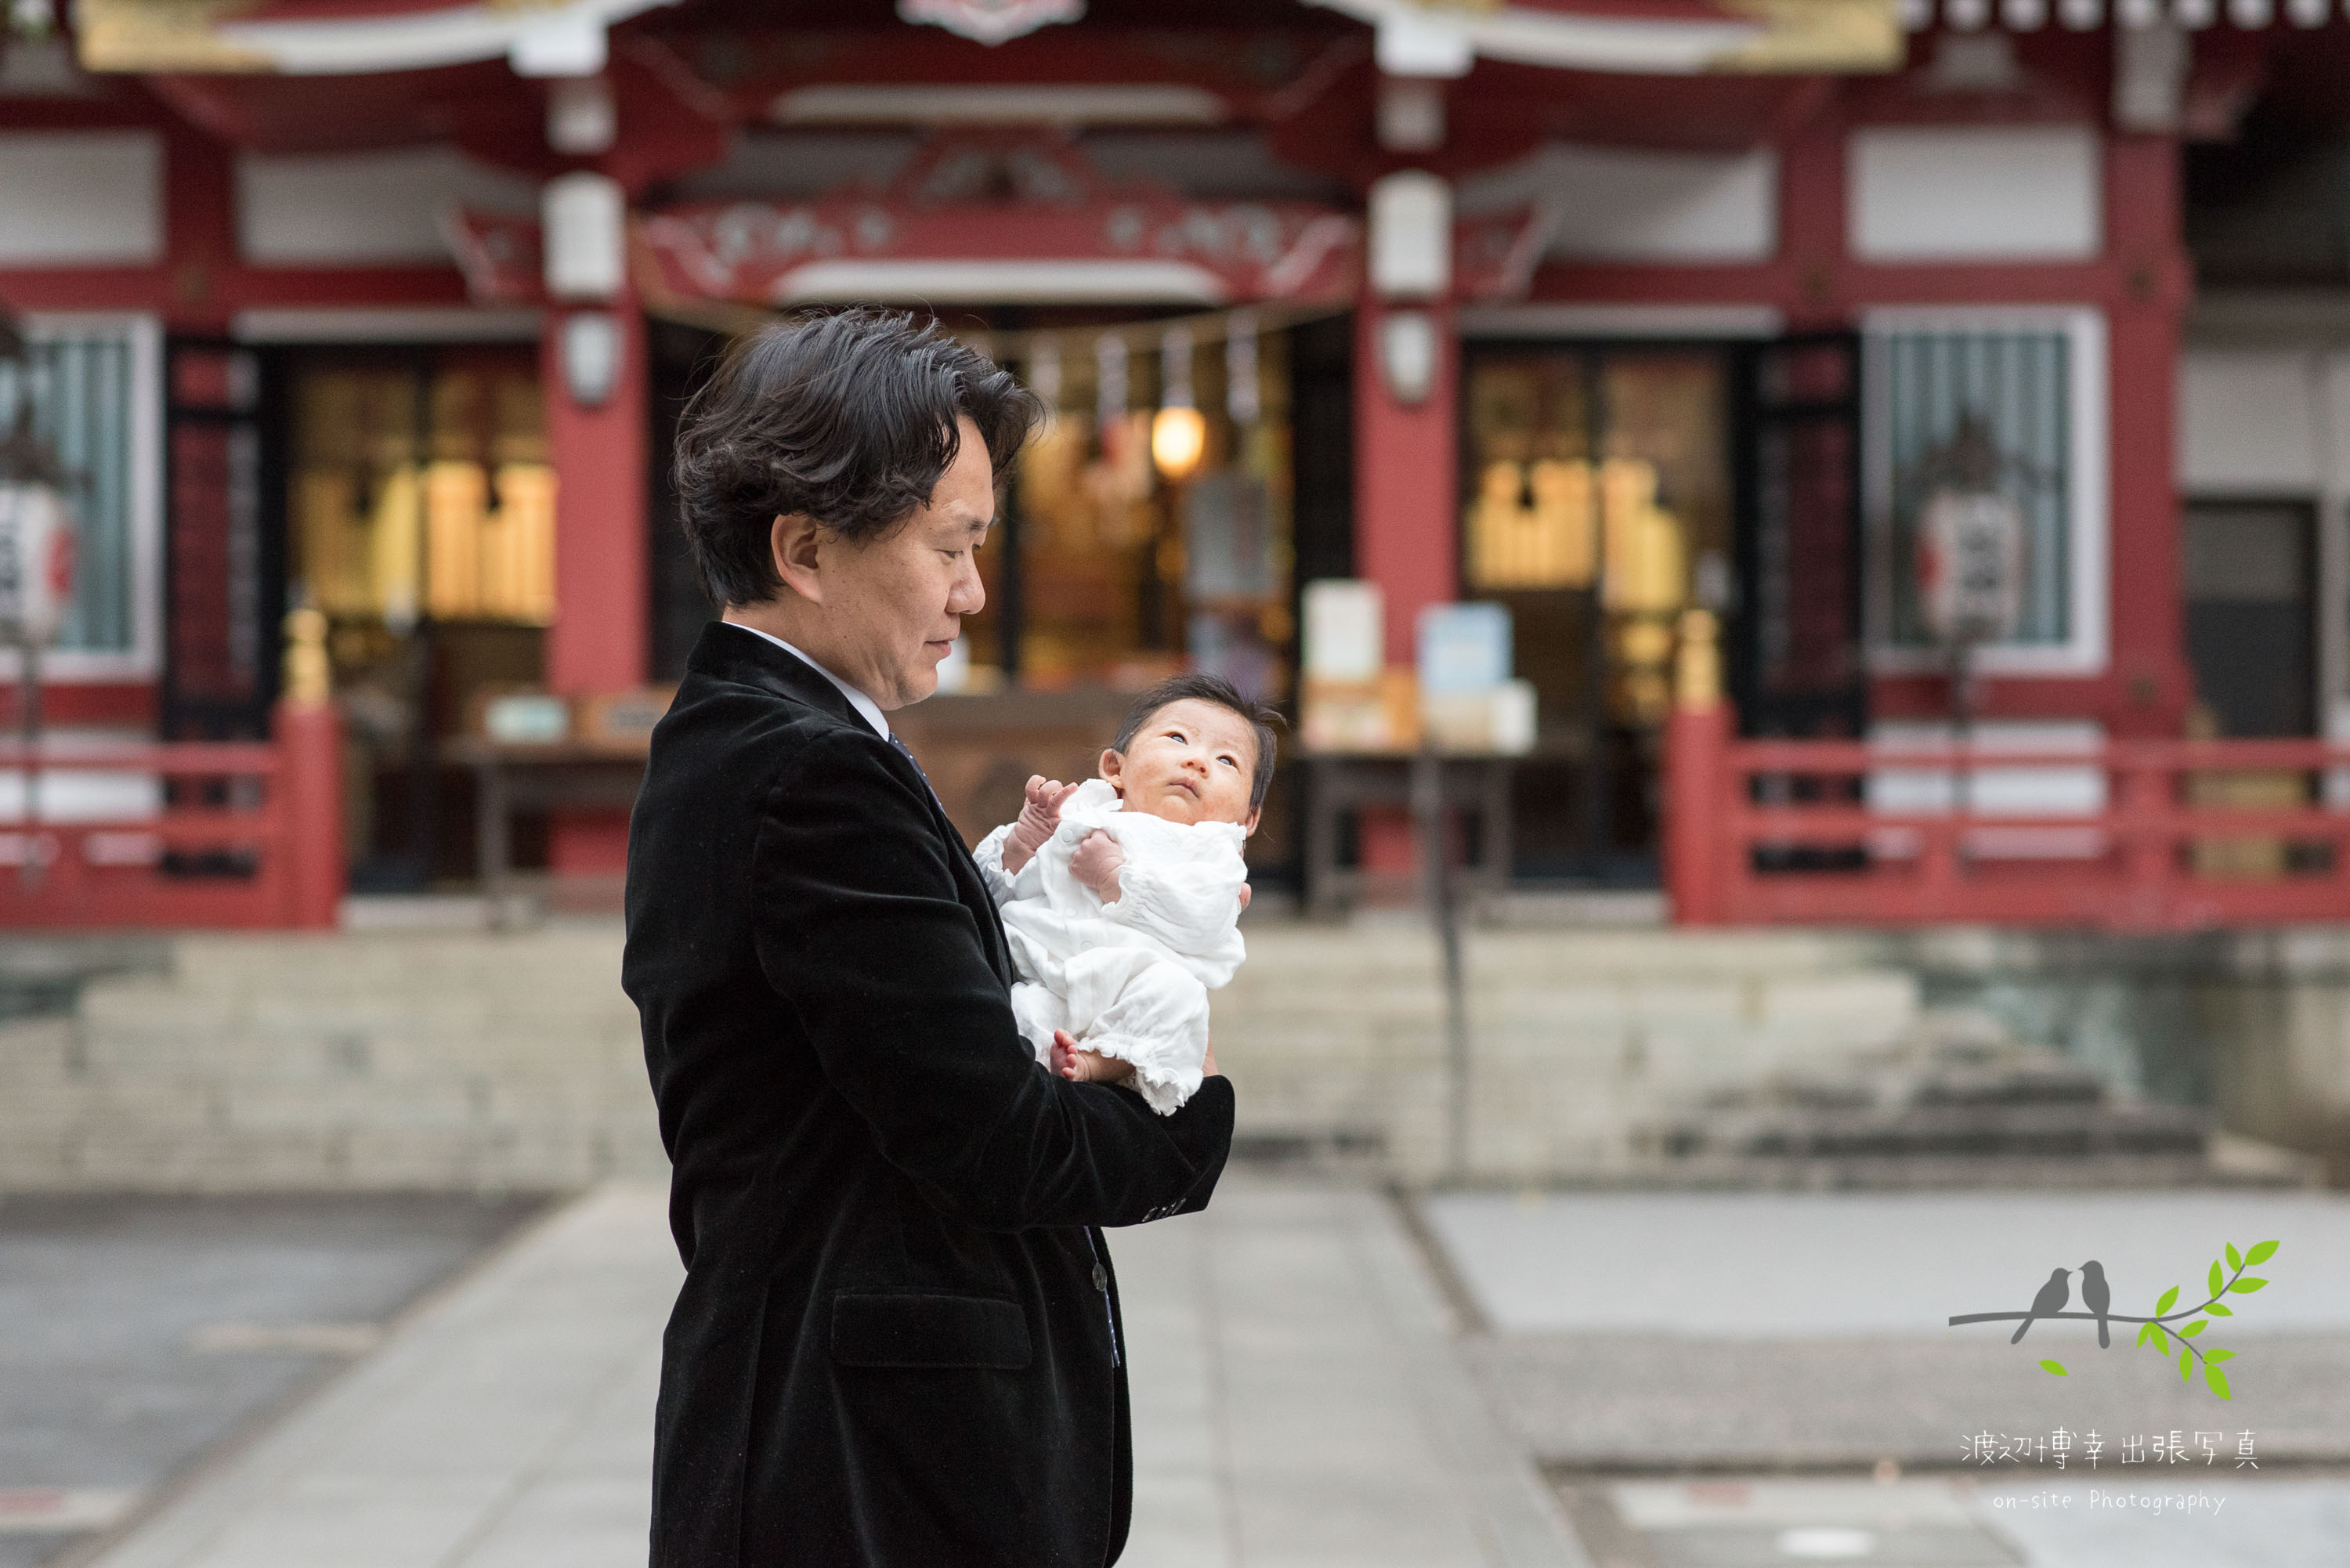 神社本殿の前で赤ちゃんを抱き立つ父親